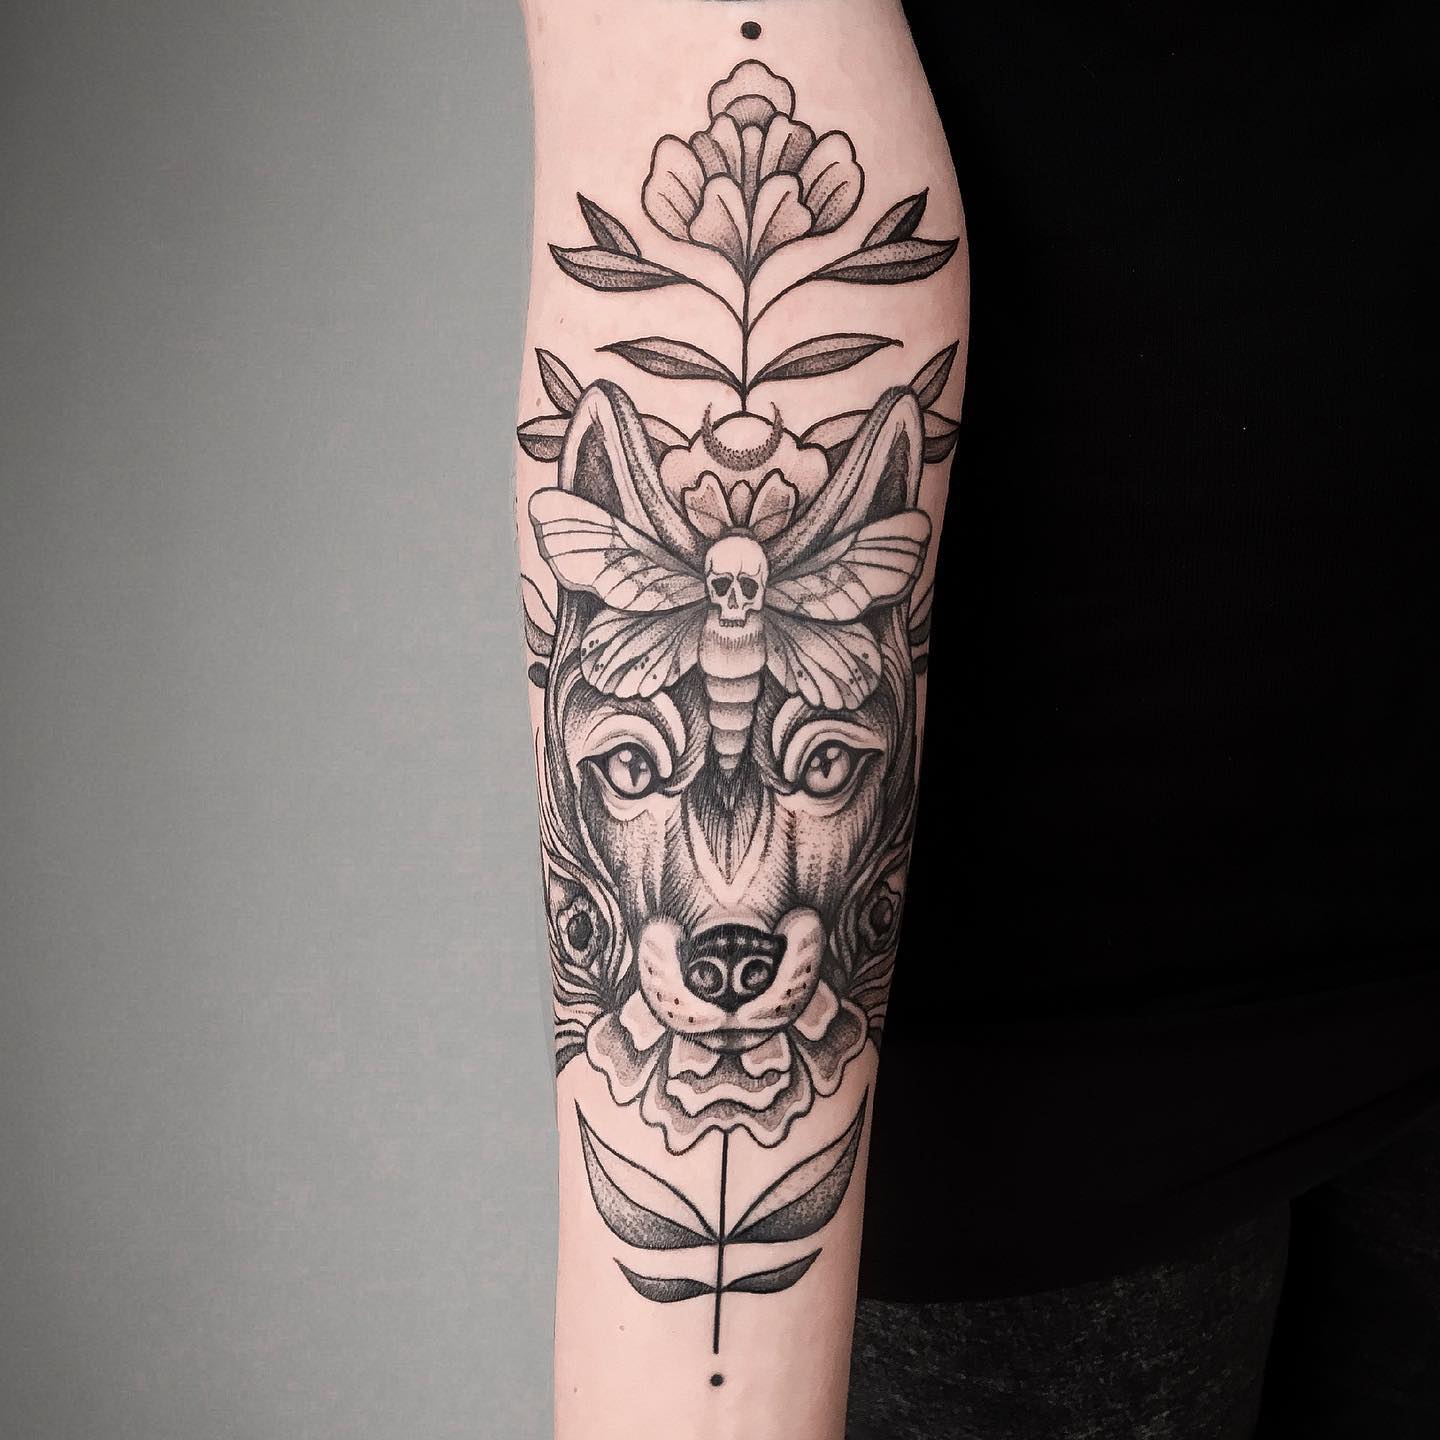 Tatuaje de zorro en el brazo.